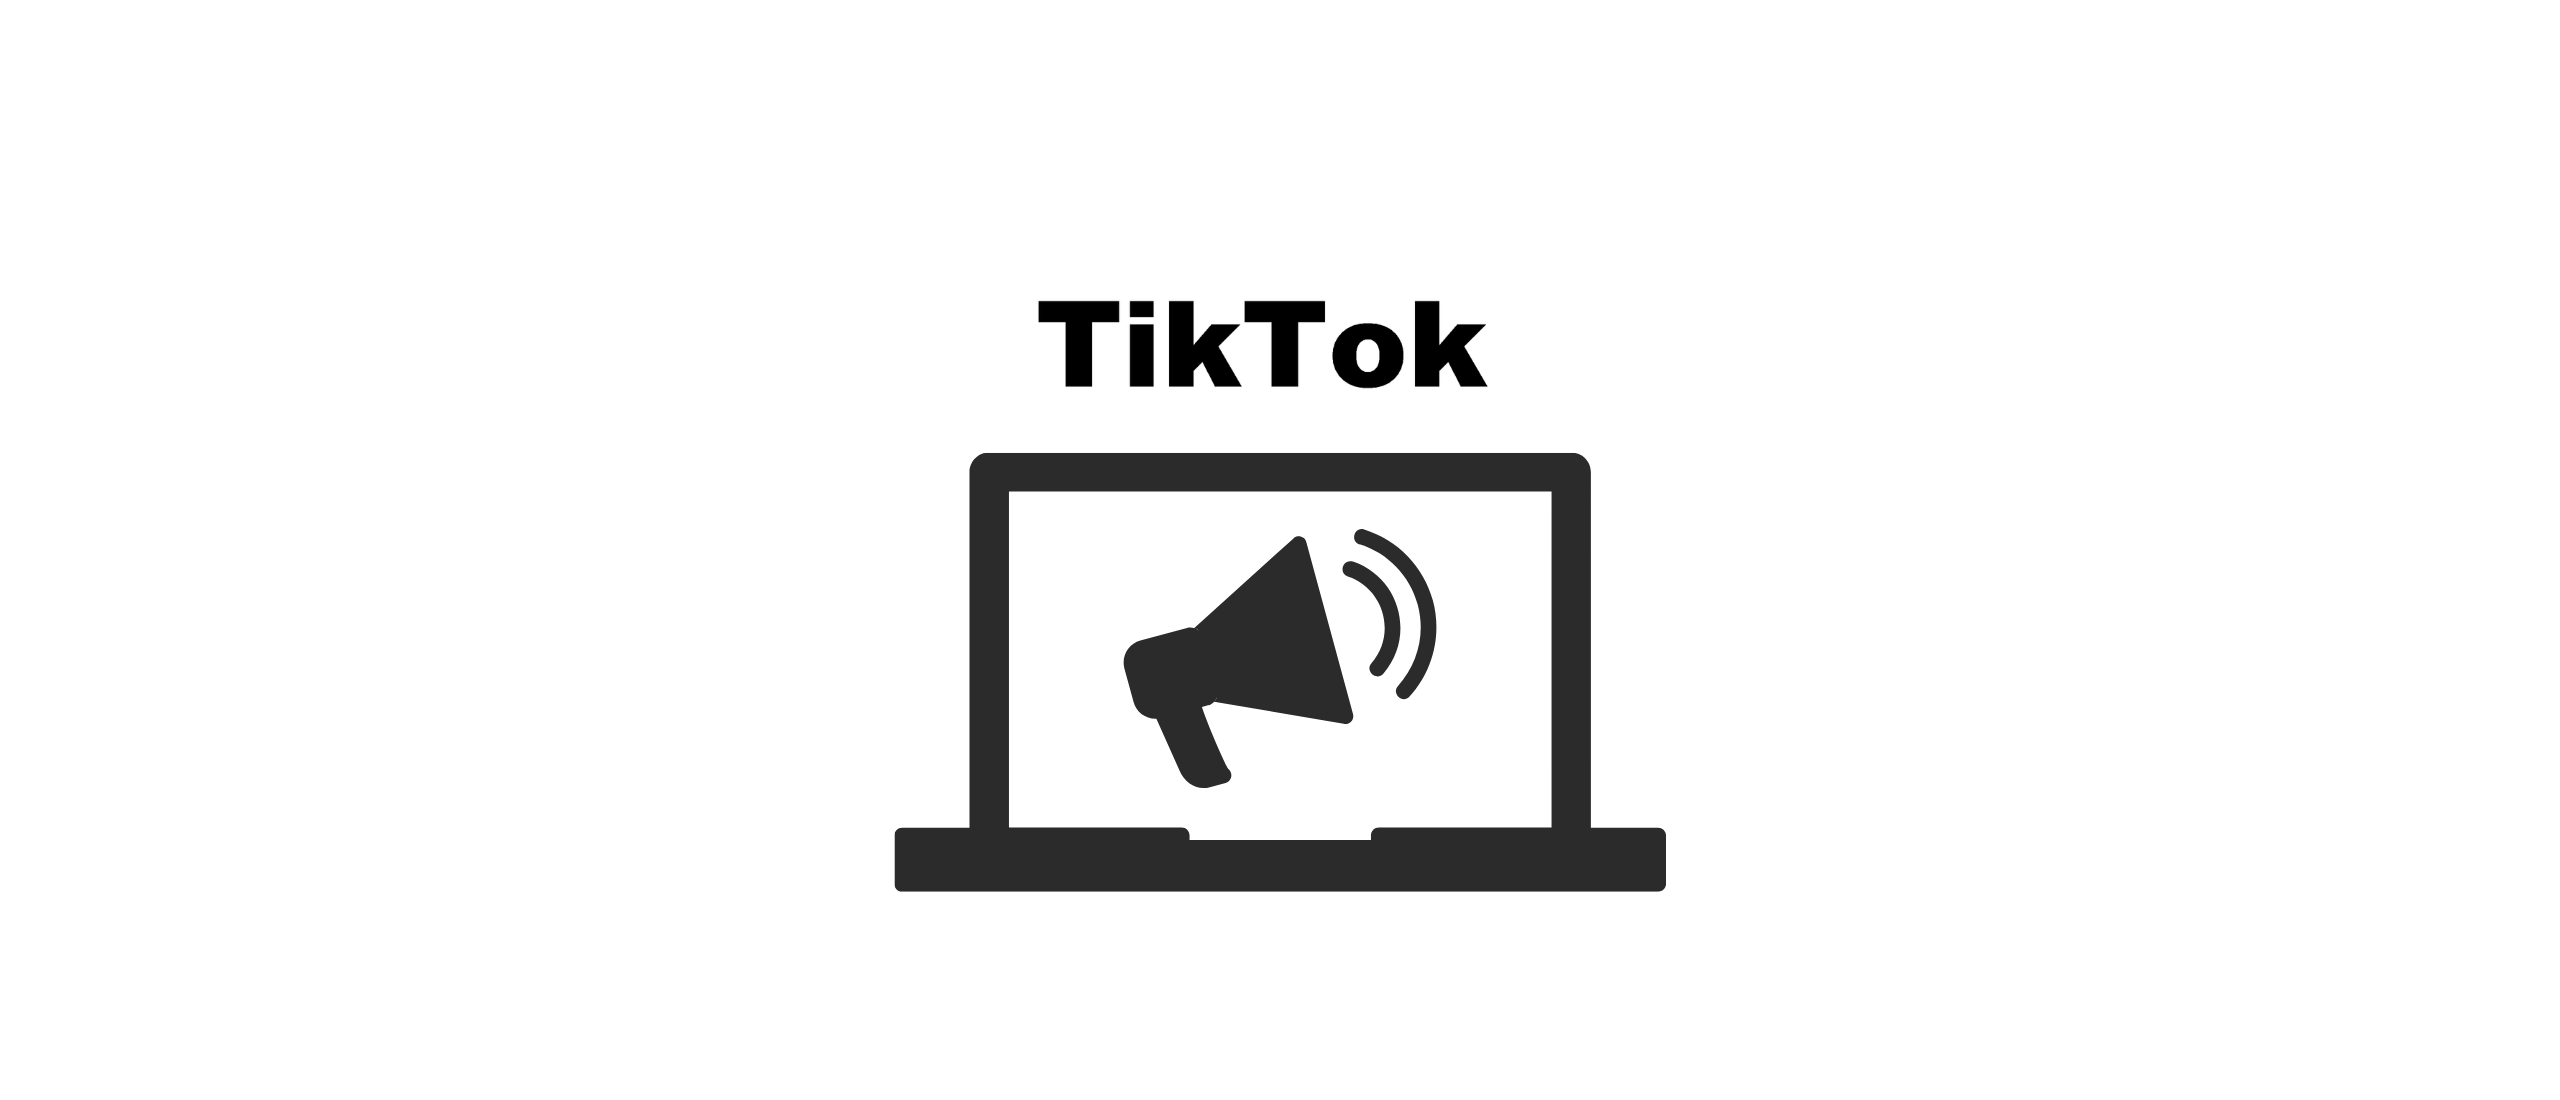 TikTok verdienmodel - Zo maakt TikTok een miljarden omzet